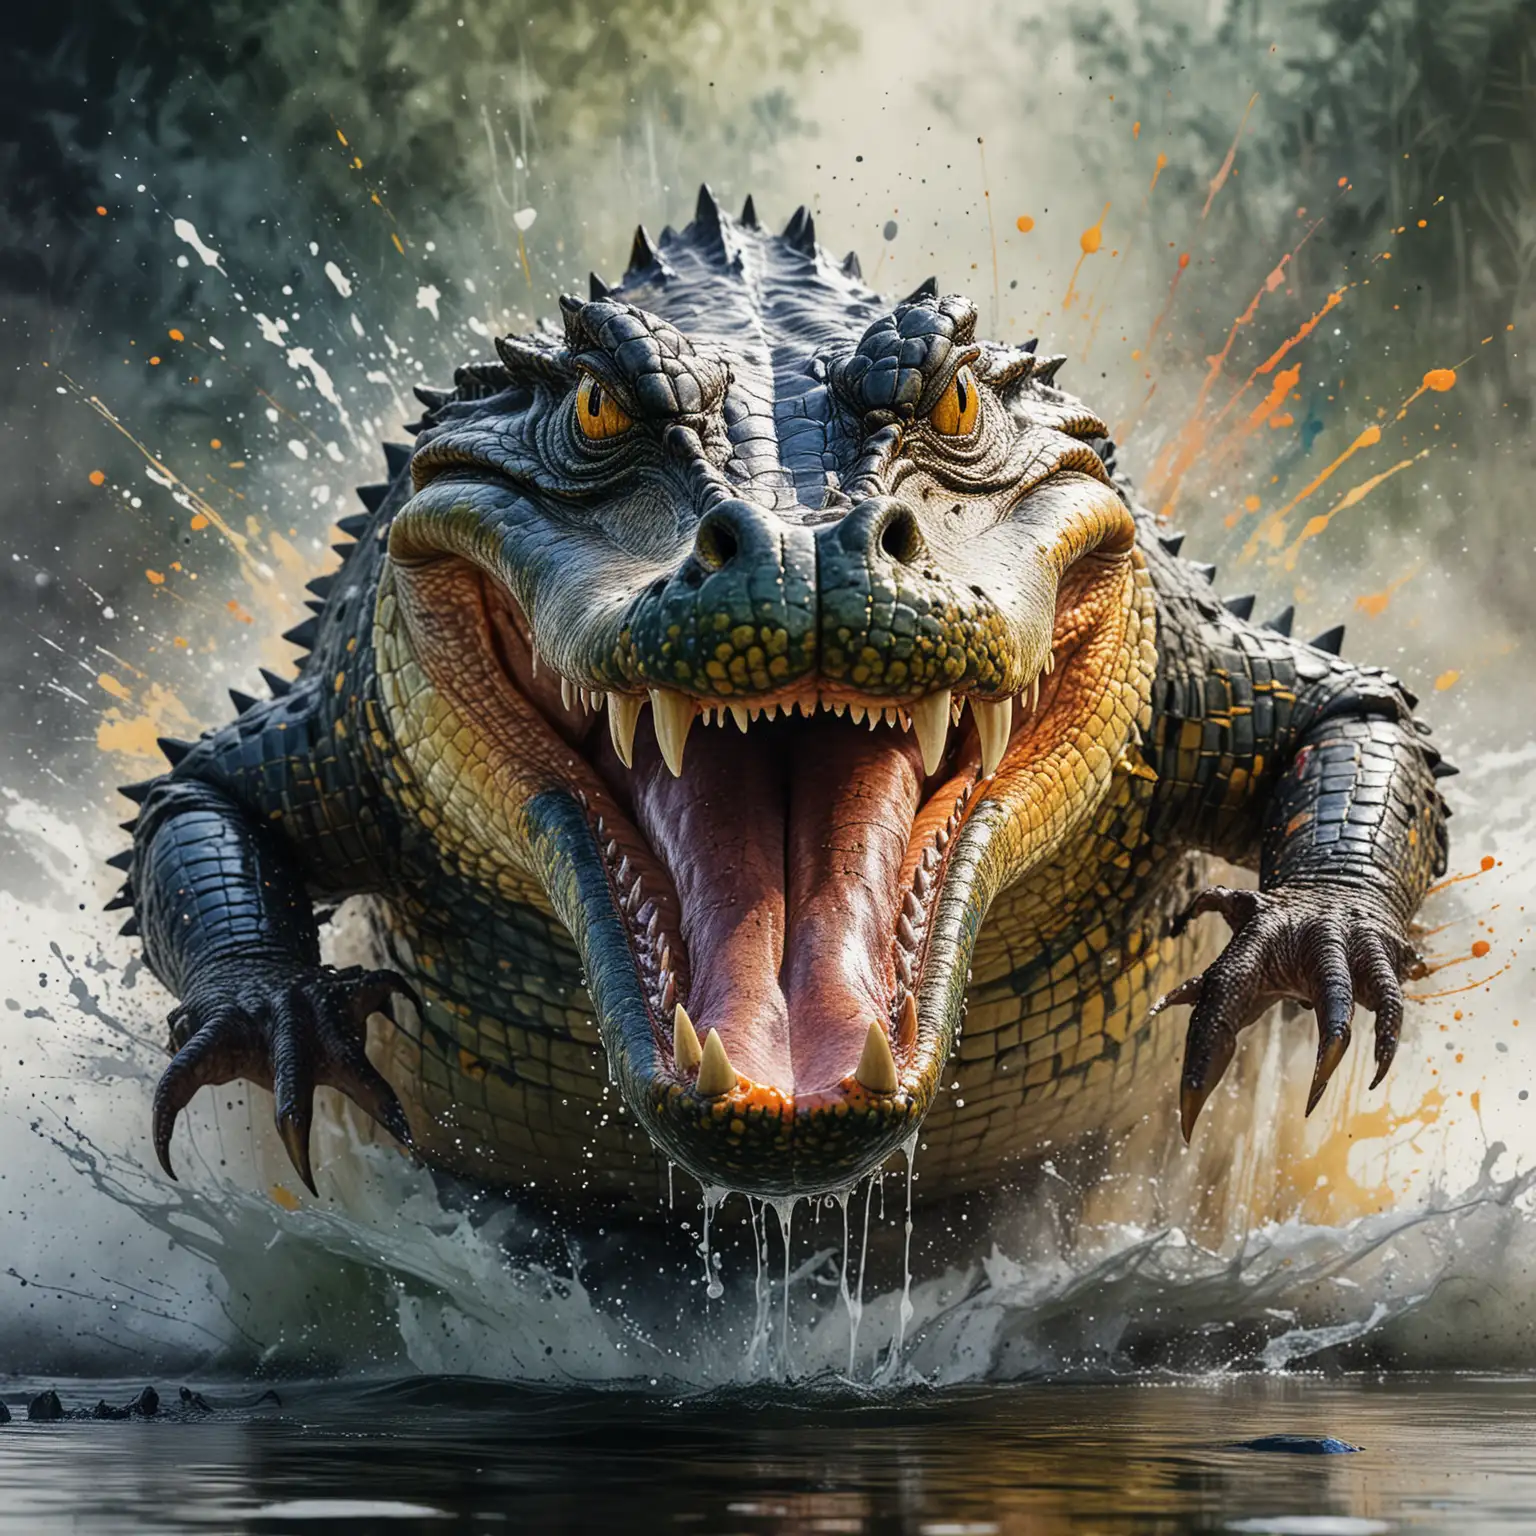 Fierce Alligator Roaring in Dynamic Watercolor Style